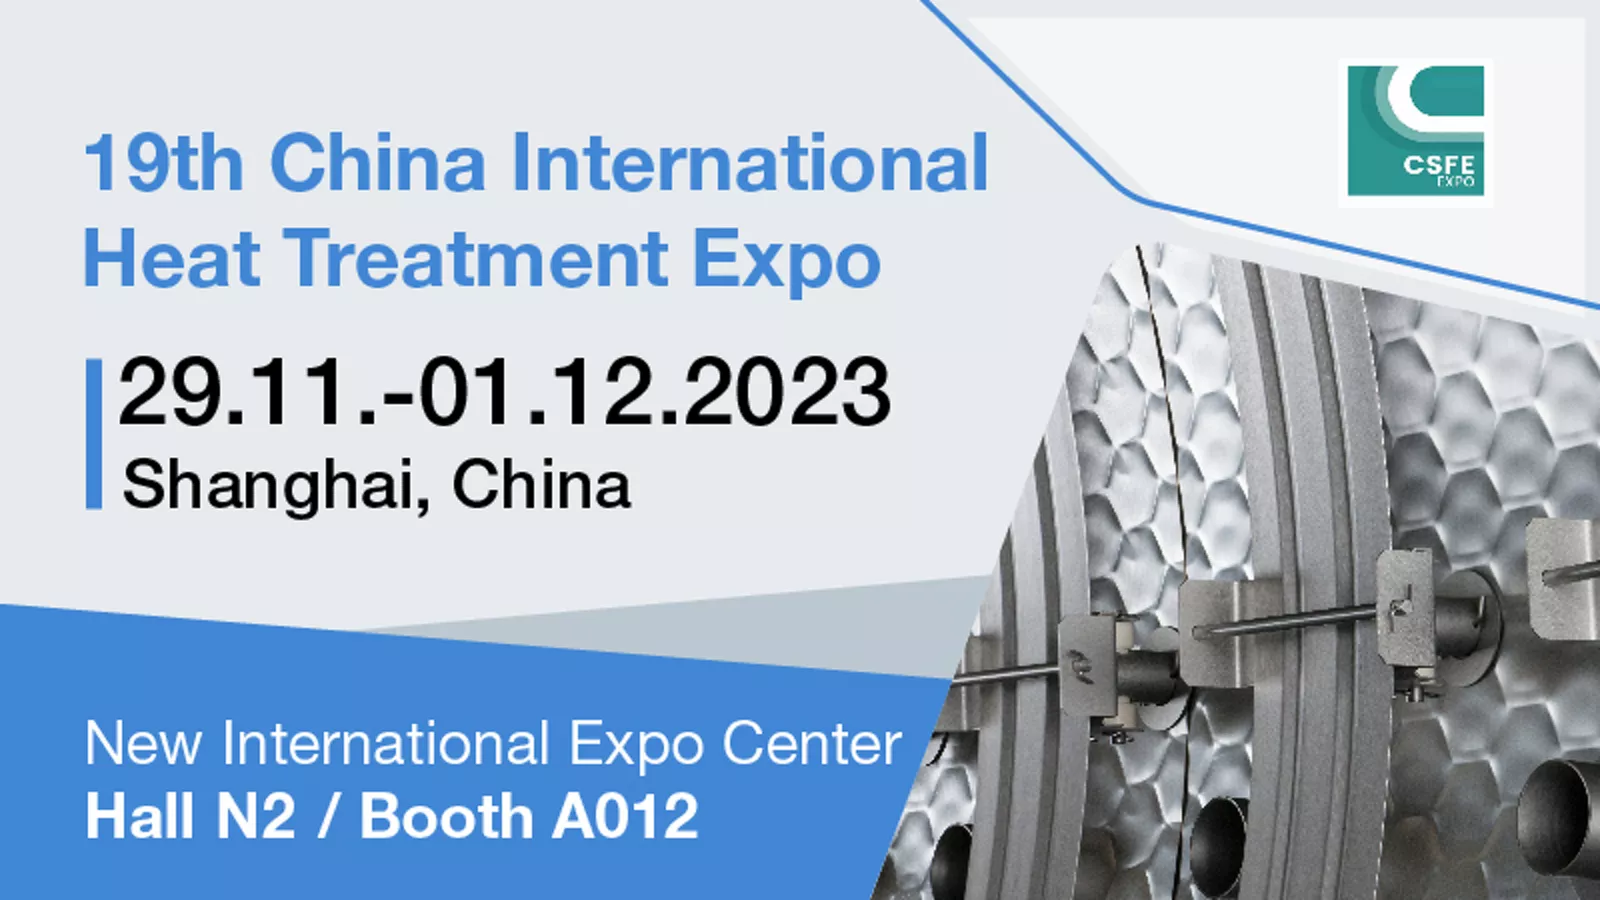 上海のChina International Heat Treatment Expo 2023でのプランゼー